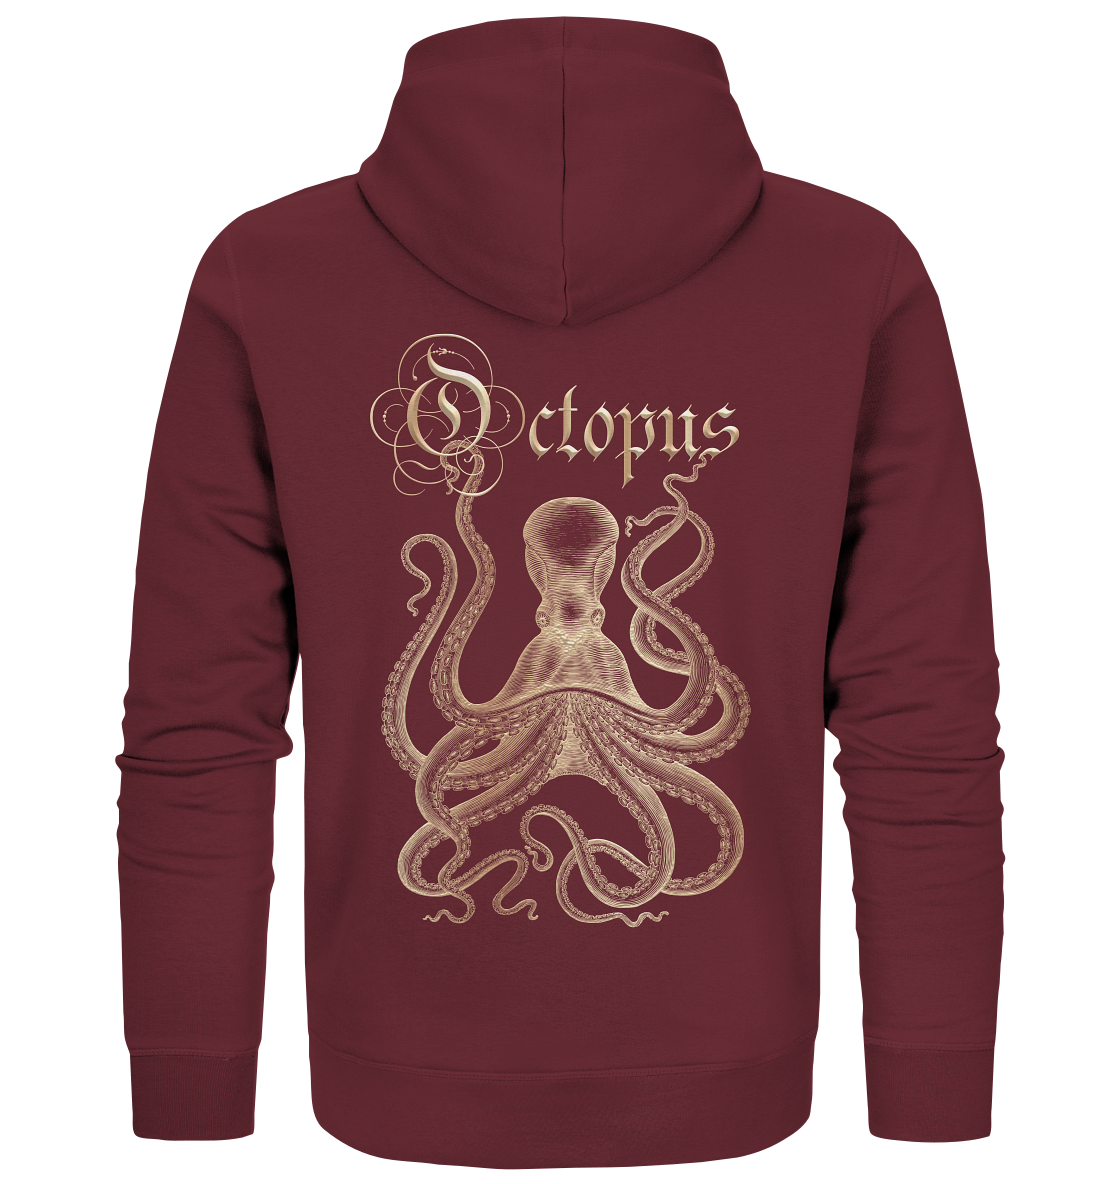 Octopus - Organic Zipper